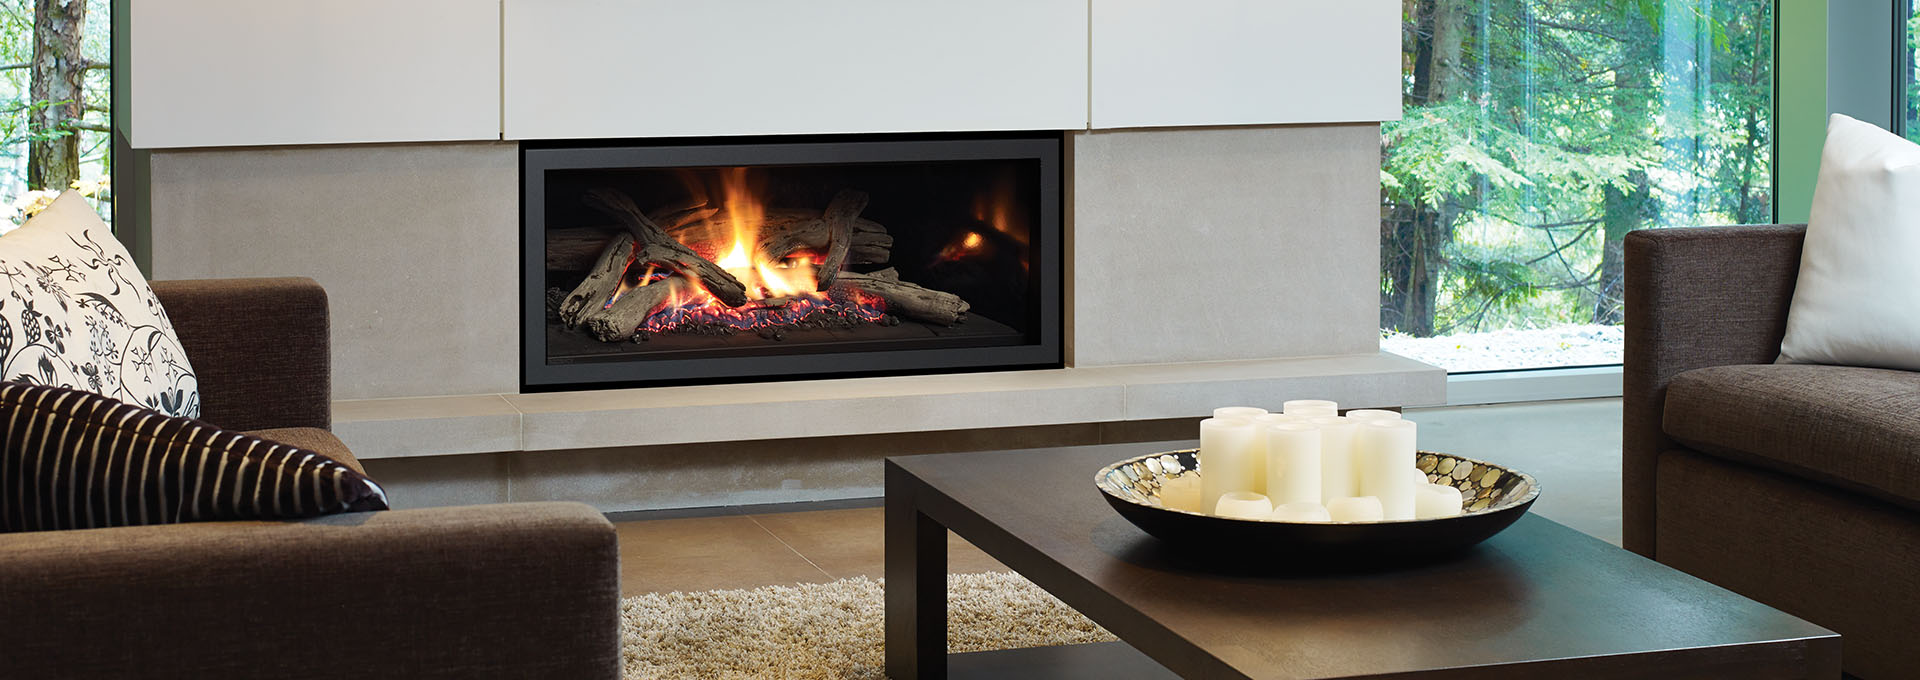 U900e High Heat Linear Gas Fireplace, Best Outdoor Linear Gas Fireplace